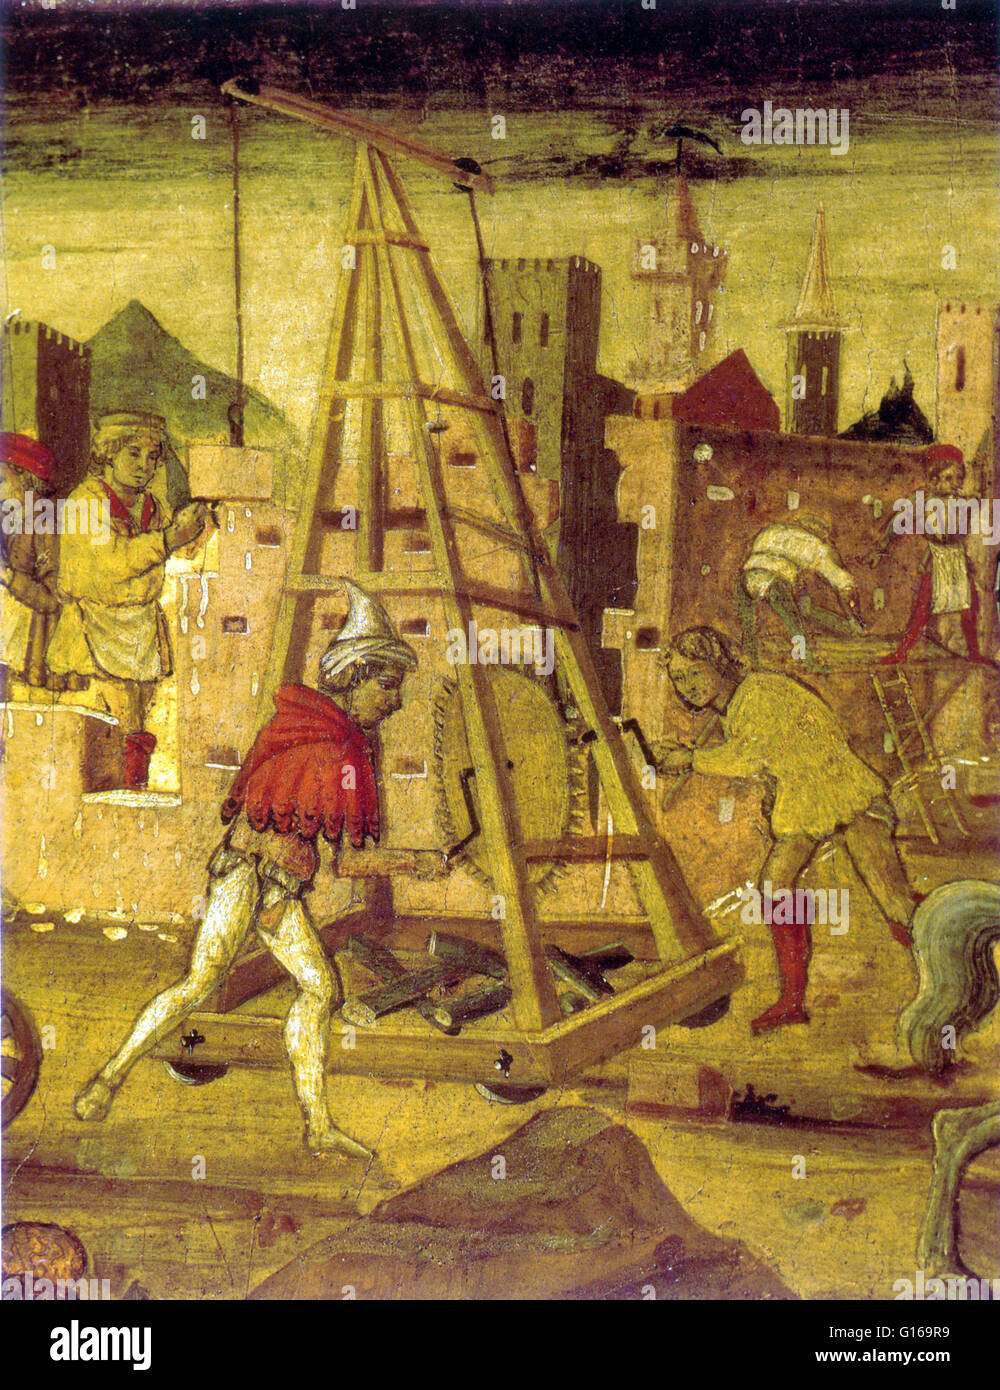 Detail aus der unbekannten 15. Jahrhundert Malerei. Treadwheel Kran (Magna Rola) ist ein aus Holz, Mensch angetrieben, heben und senken Gerät. Es wurde vor allem während der Römerzeit und dem Mittelalter in den Bau von Burgen und Kathedralen verwendet. Die oft Hea Stockfoto